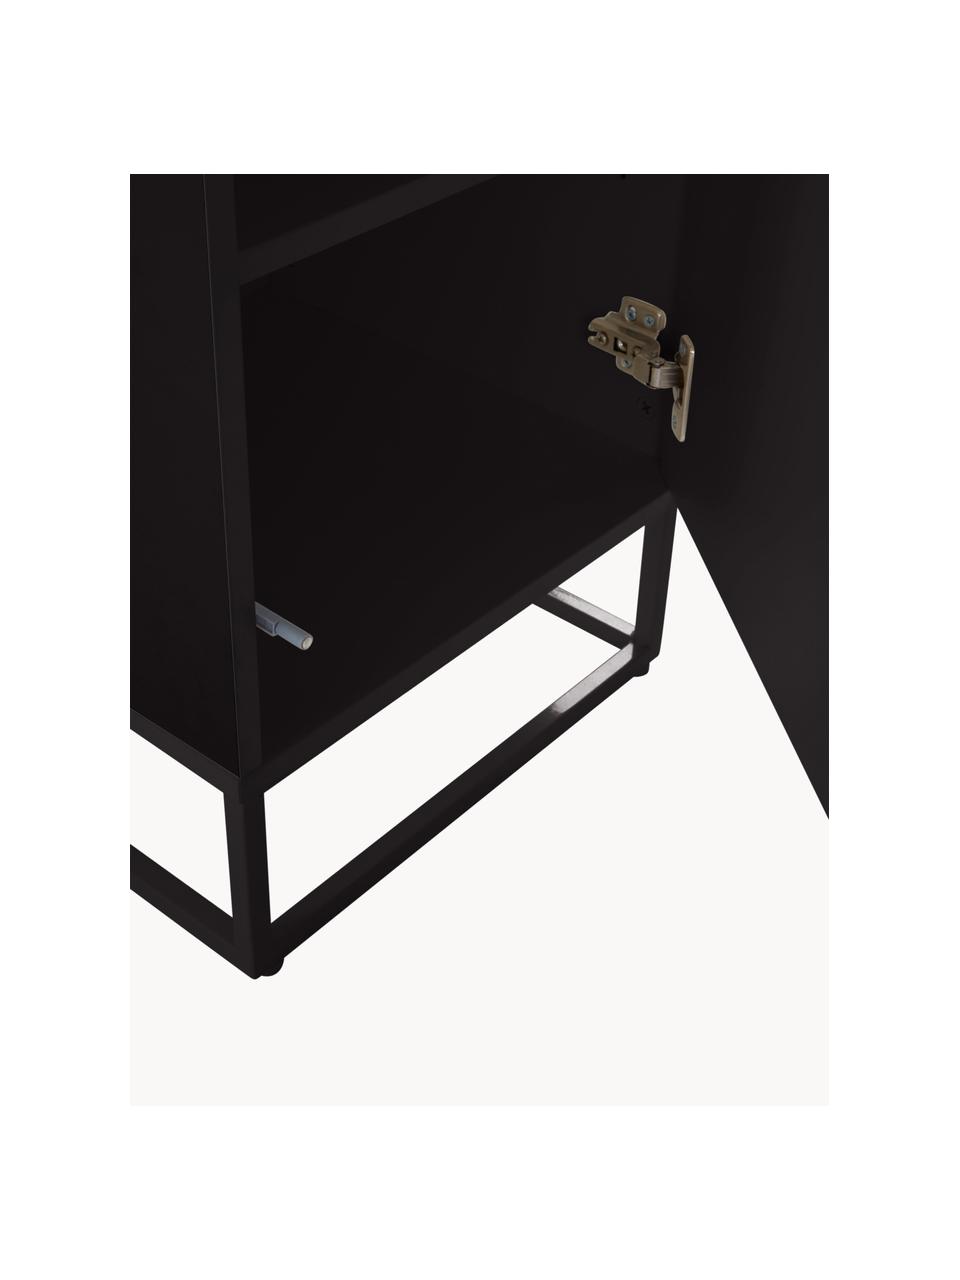 Dřevěný noční stolek Lyckeby, Černá, Š 40 cm, V 65 cm